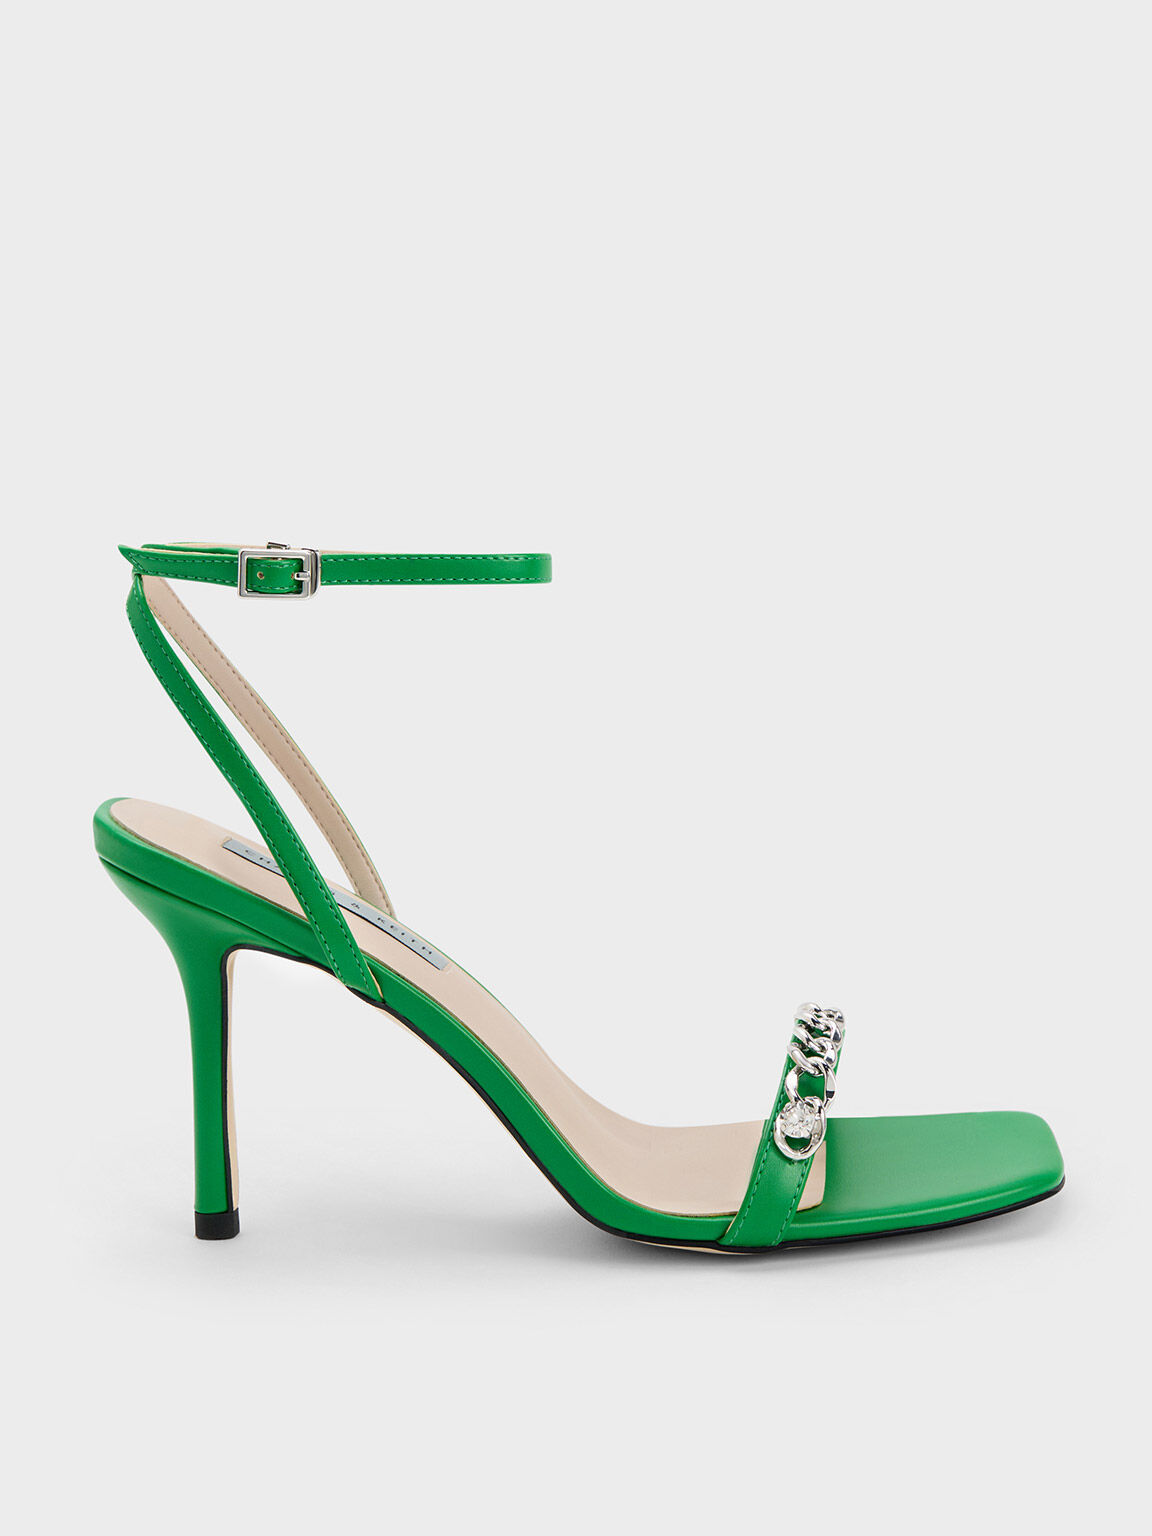 Boden Beaded Tassels Suede Stiletto Heel Sandals, Rich Emerald Green, 4